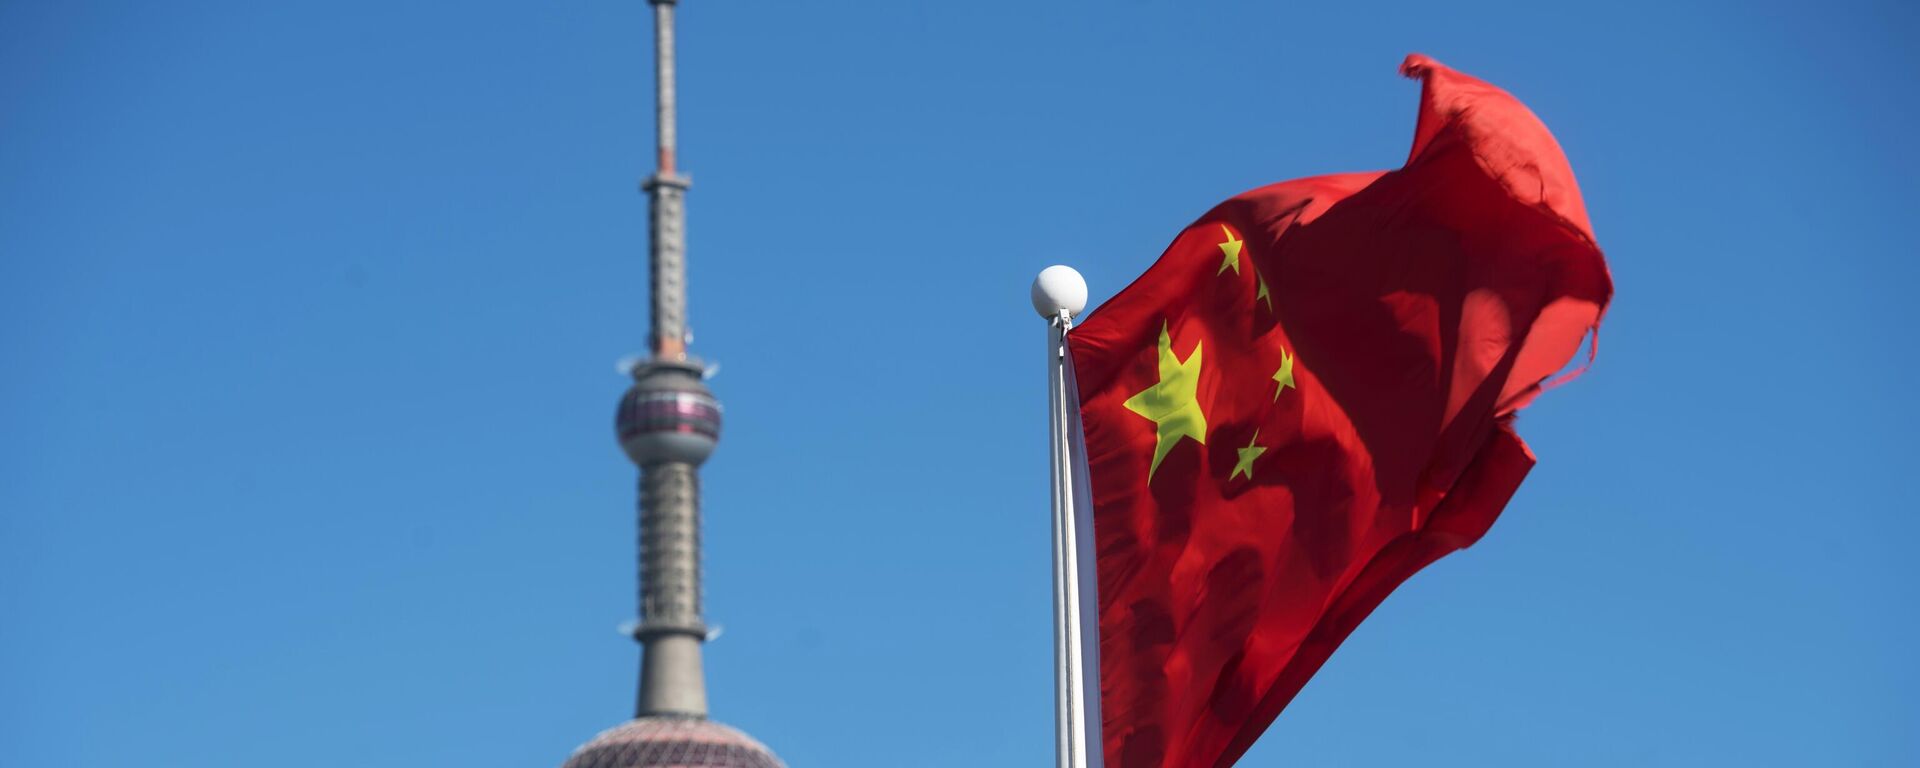 Флаг Китая рядом с телебашней в Шанхае, архивное фото - Sputnik Lietuva, 1920, 11.08.2021